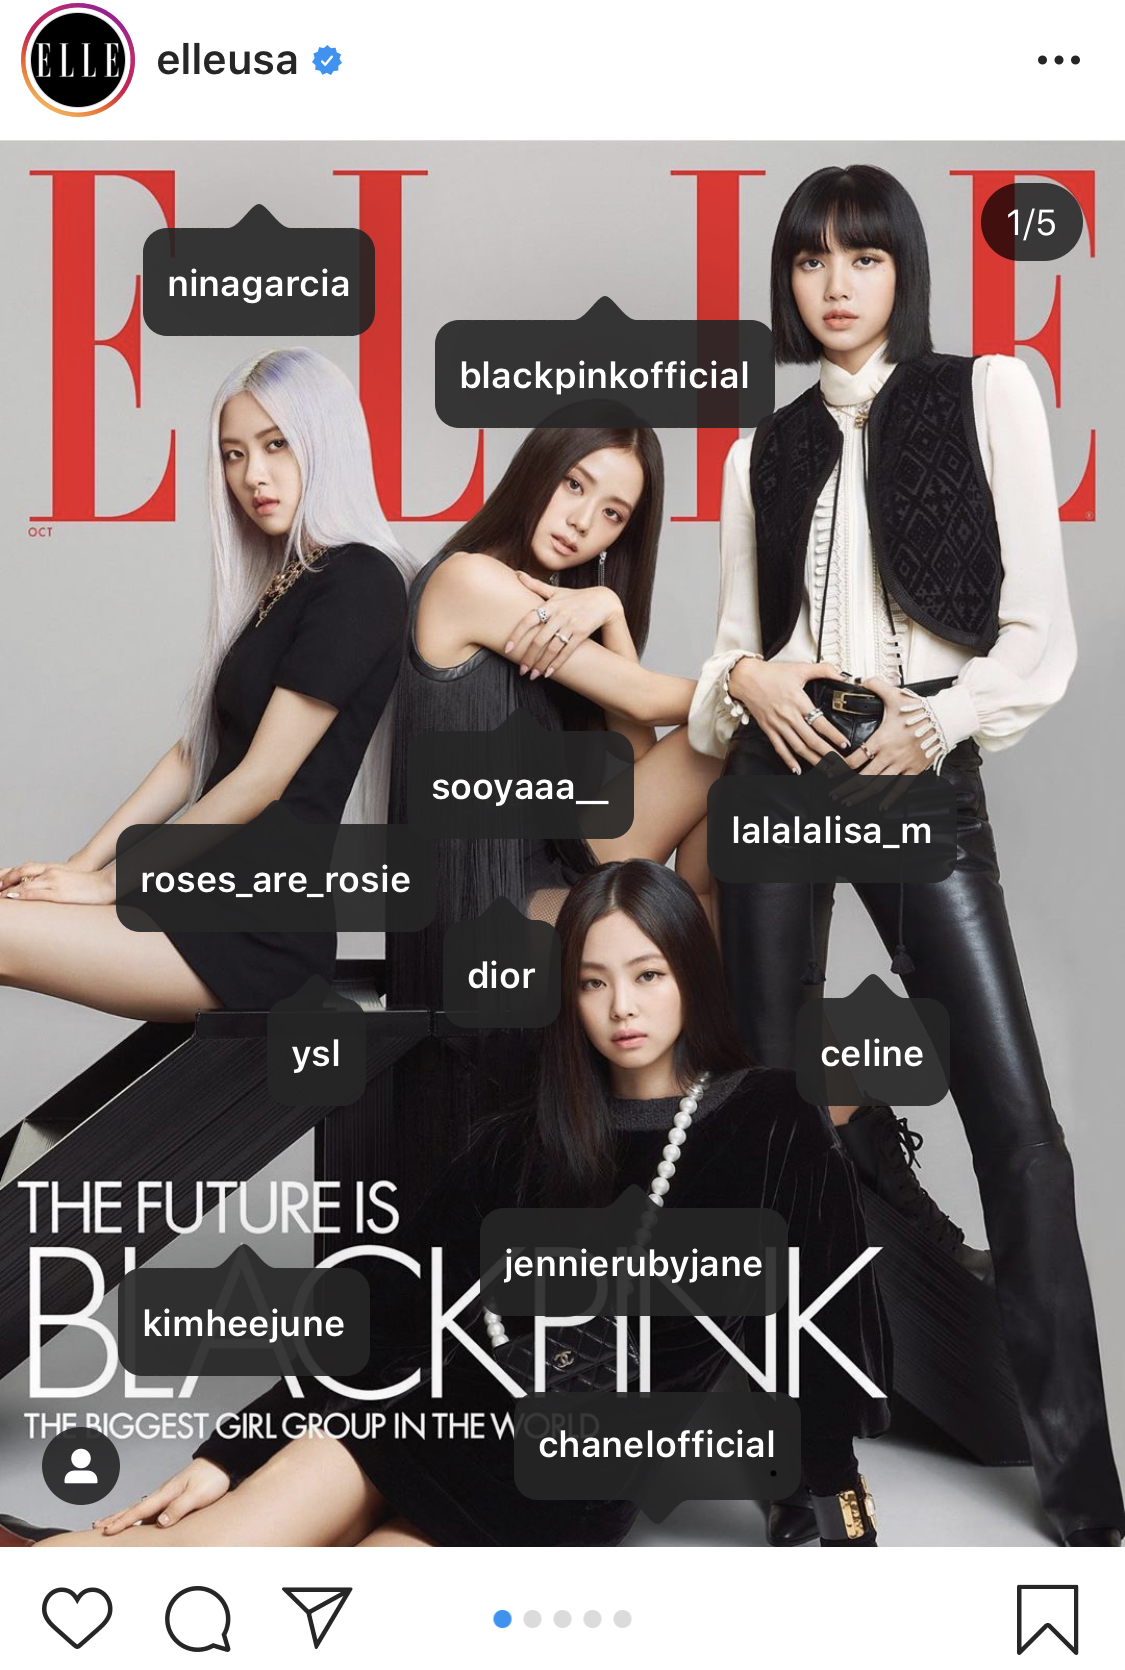 BLACKPINK trông thật tuyệt vời trên trang bìa của tạp chí Elle Mỹ và còn có thêm túi của họ nữa. Hãy xem họ dày công giành được đồng tiền như thế nào và mang nó đi đâu trong túi của mình.